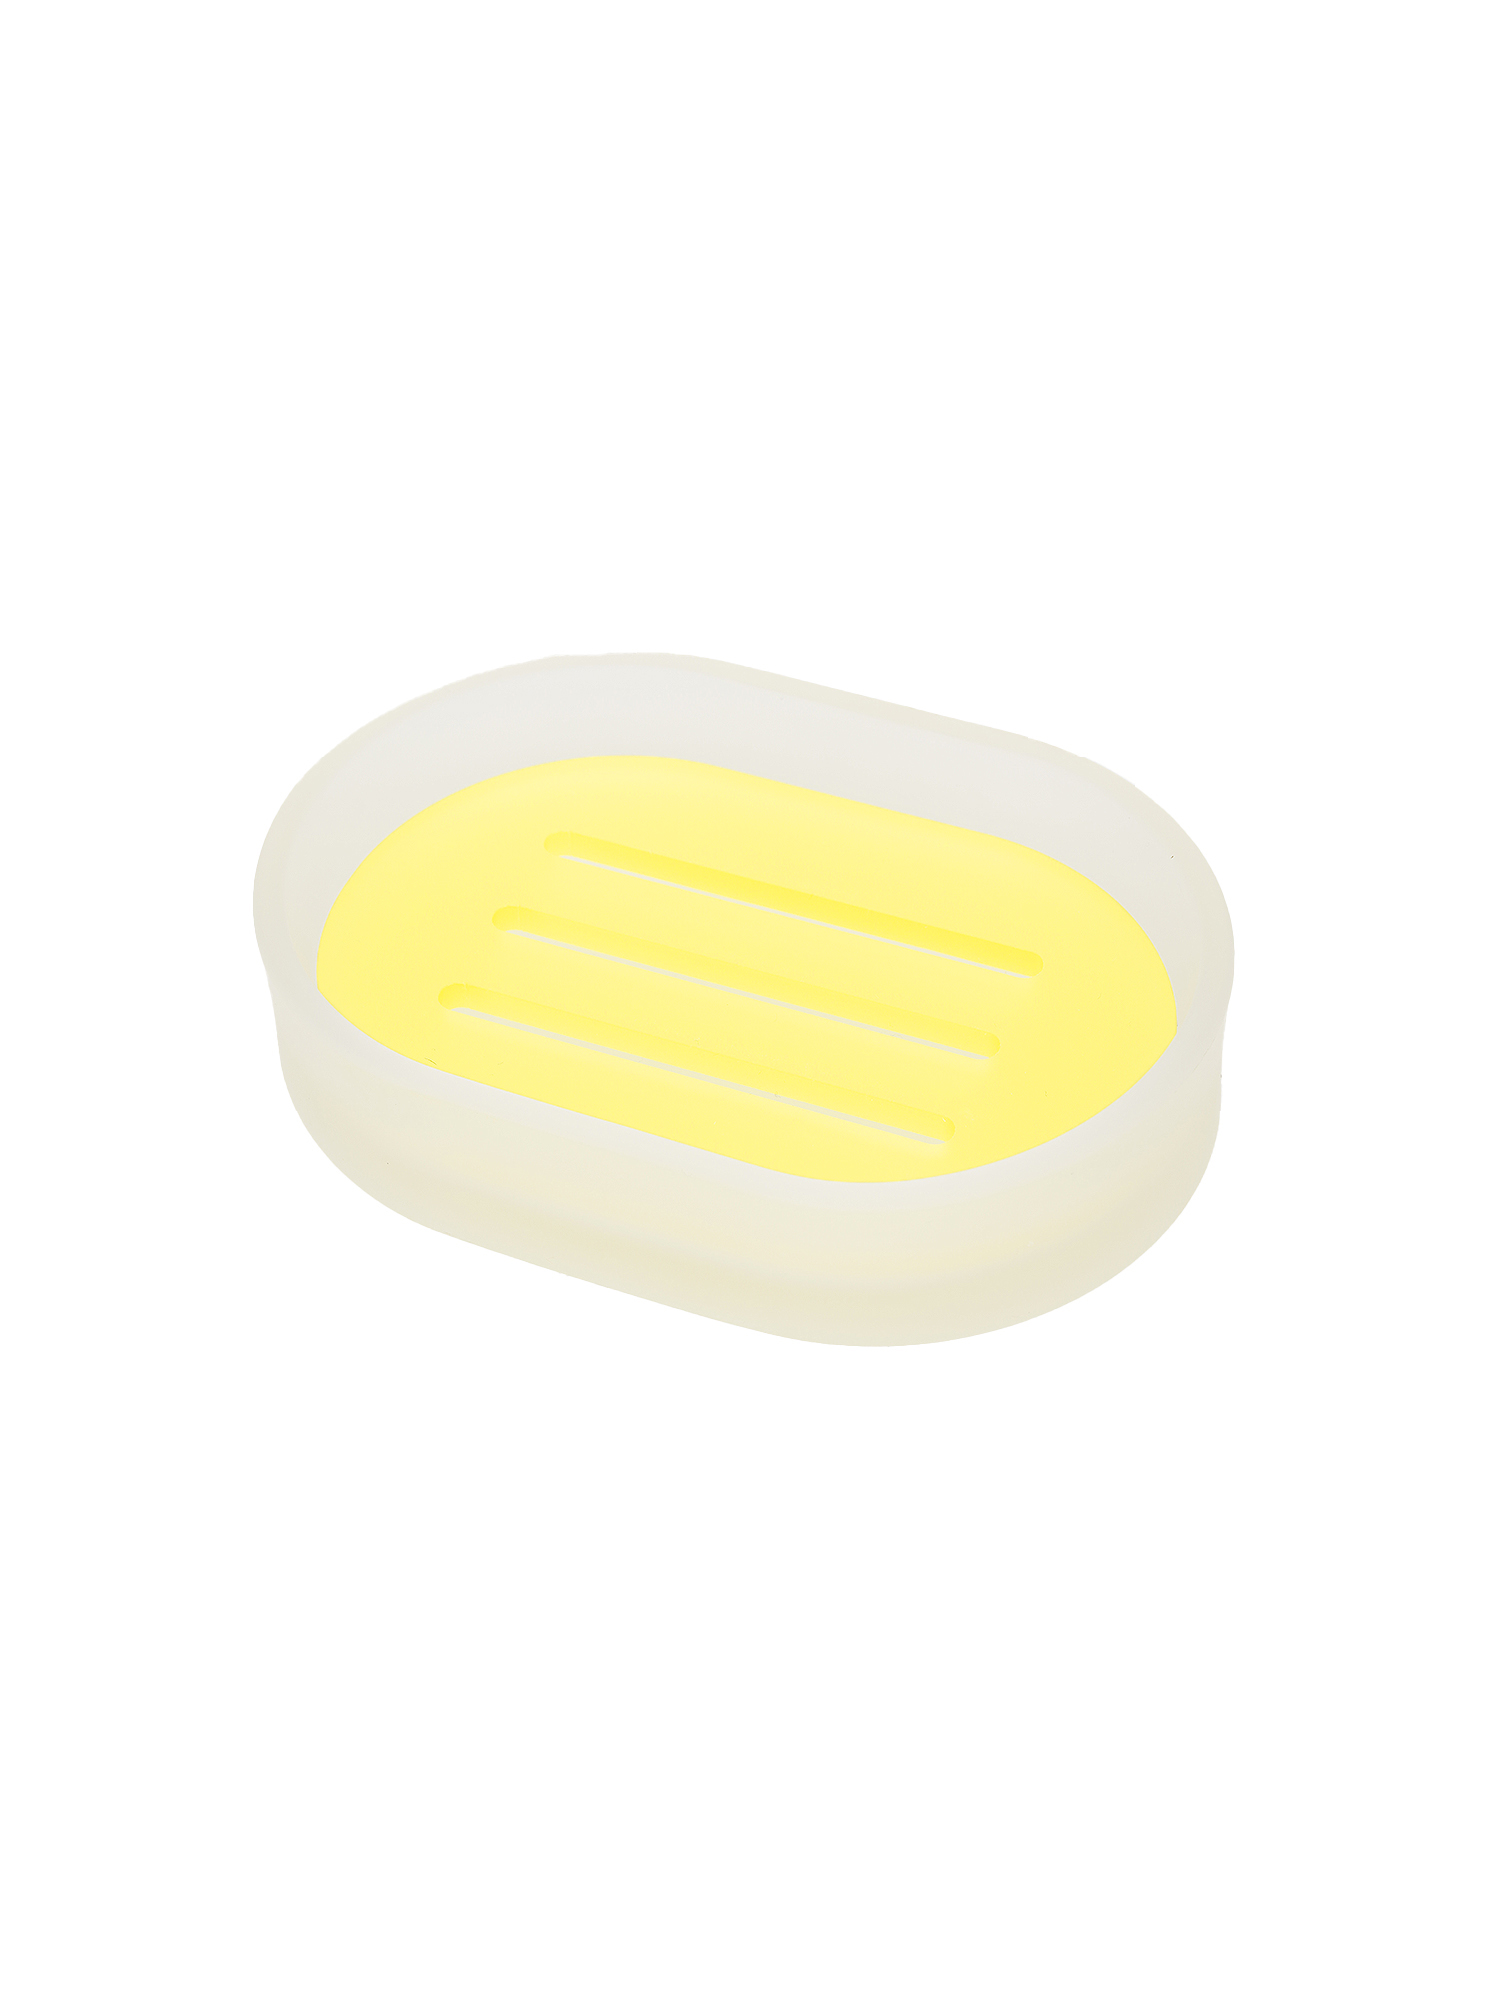 Let’s Binu Soap Dish Lemon Yellow